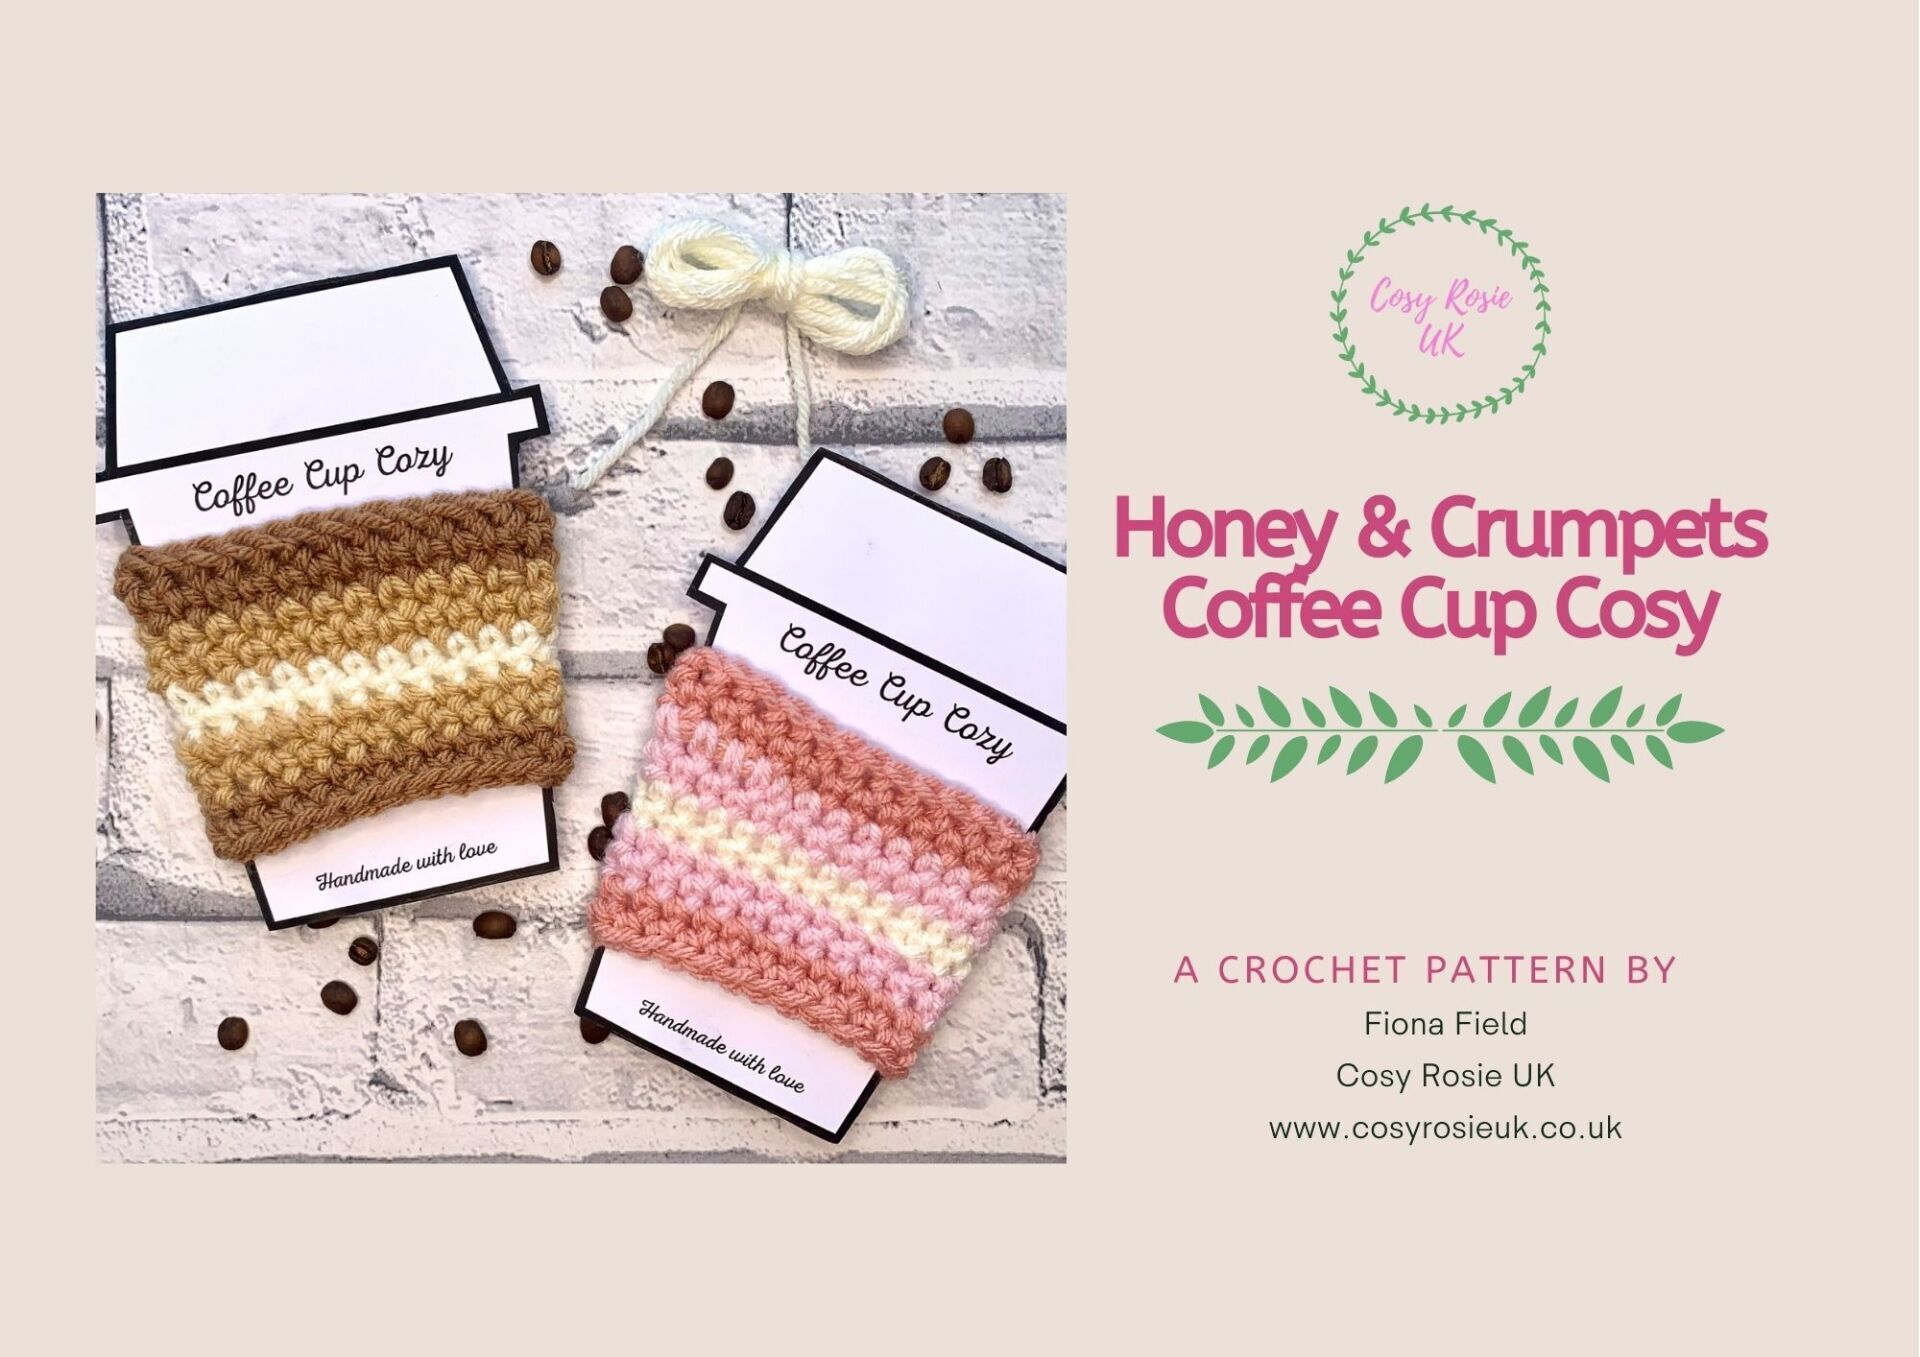 Coffee Cup Cozy Crochet pattern